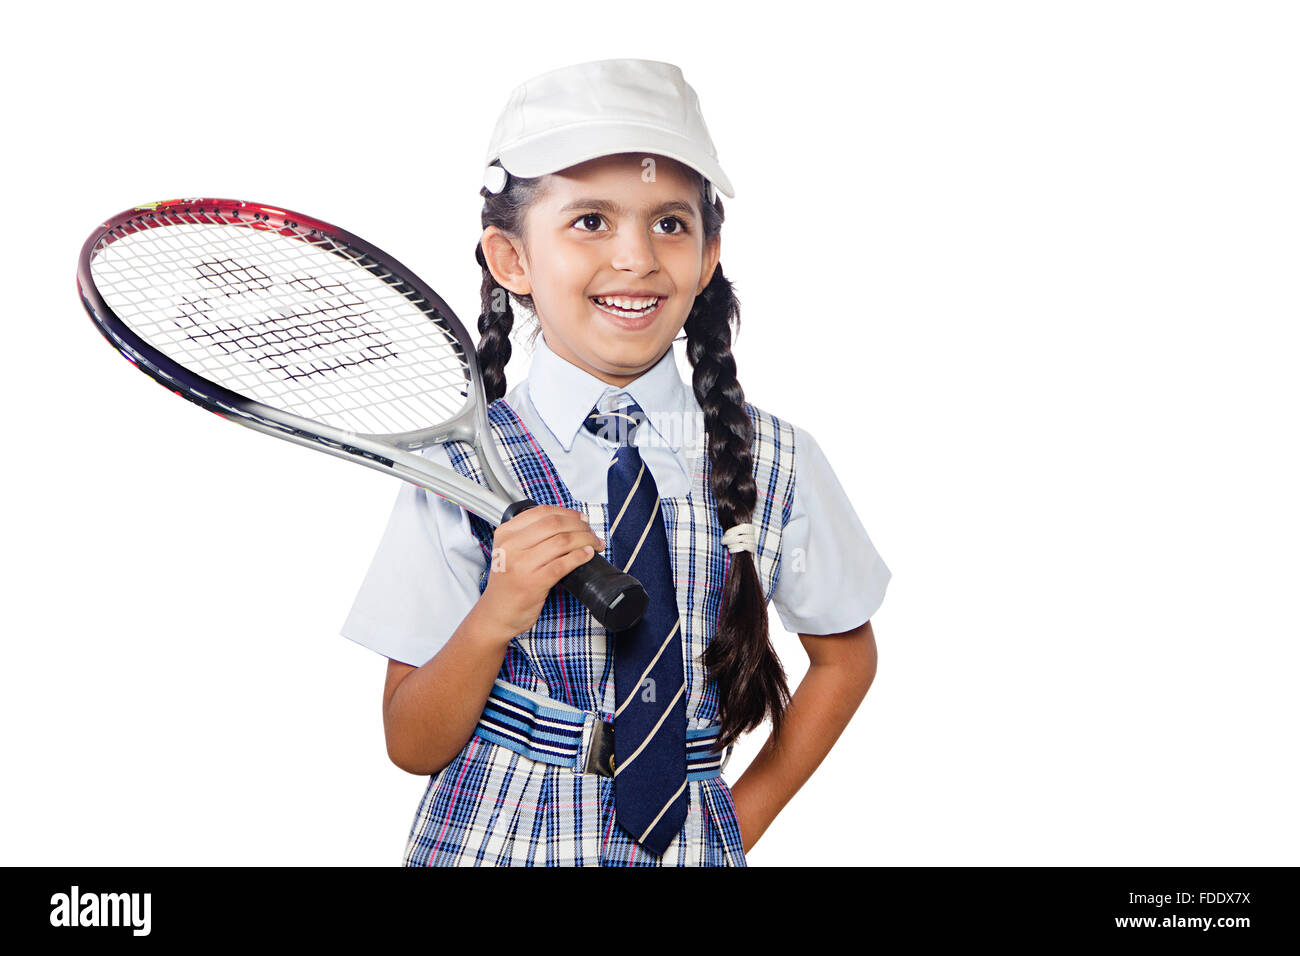 1 personne seule fille rêve hobby holding racket sports tennis succès scolaire Banque D'Images